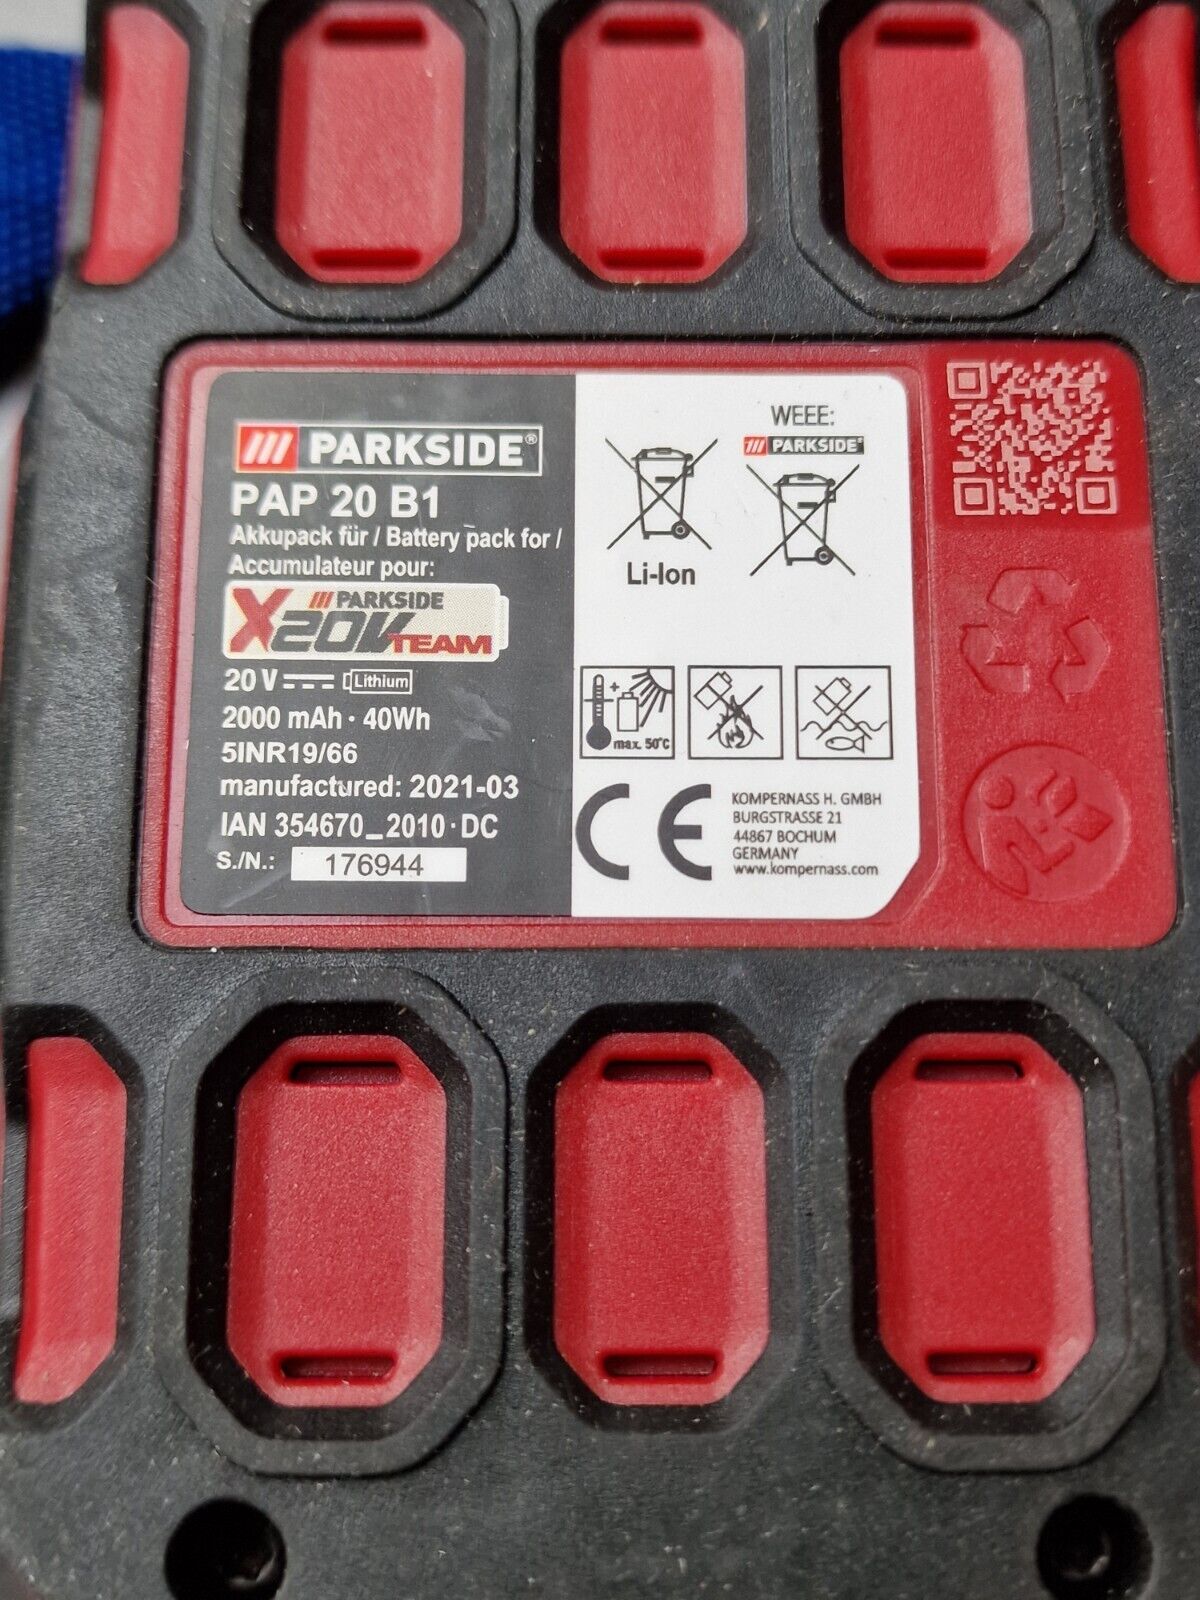 Parkside Battery 20 V 2 Ah Fits All Parkside X20v Team Series Tools